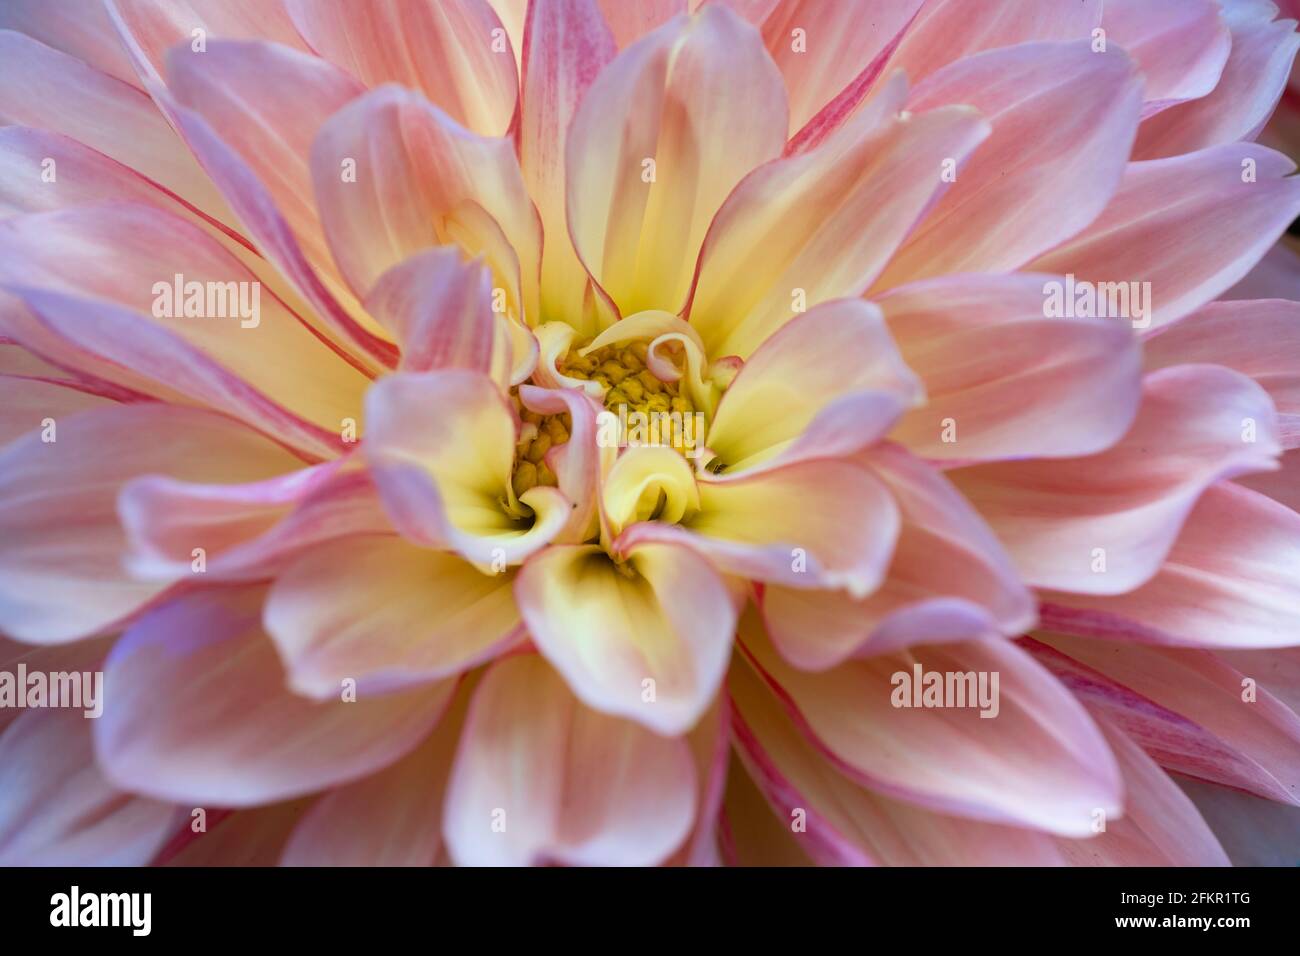 Nahaufnahme einer blühenden rosafarbenen, gelben Dahlia-Blume. Konzentrieren Sie sich auf das gelbe Zentrum der Dahlie Stockfoto